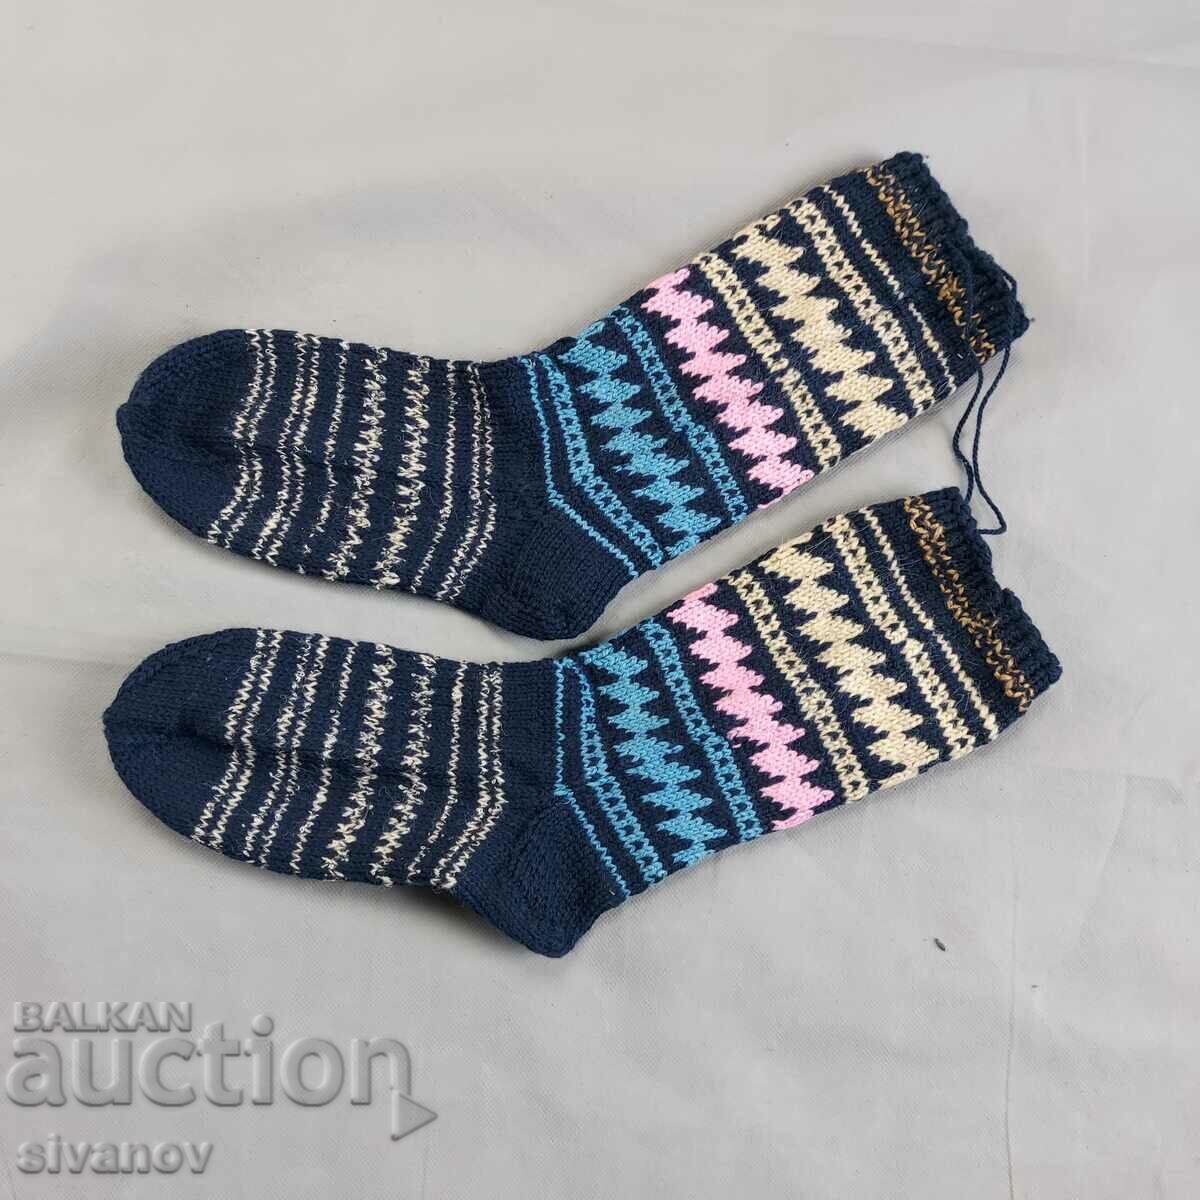 Μάλλινες κάλτσες για έθνικ φολκλόρ φορεσιά #2354